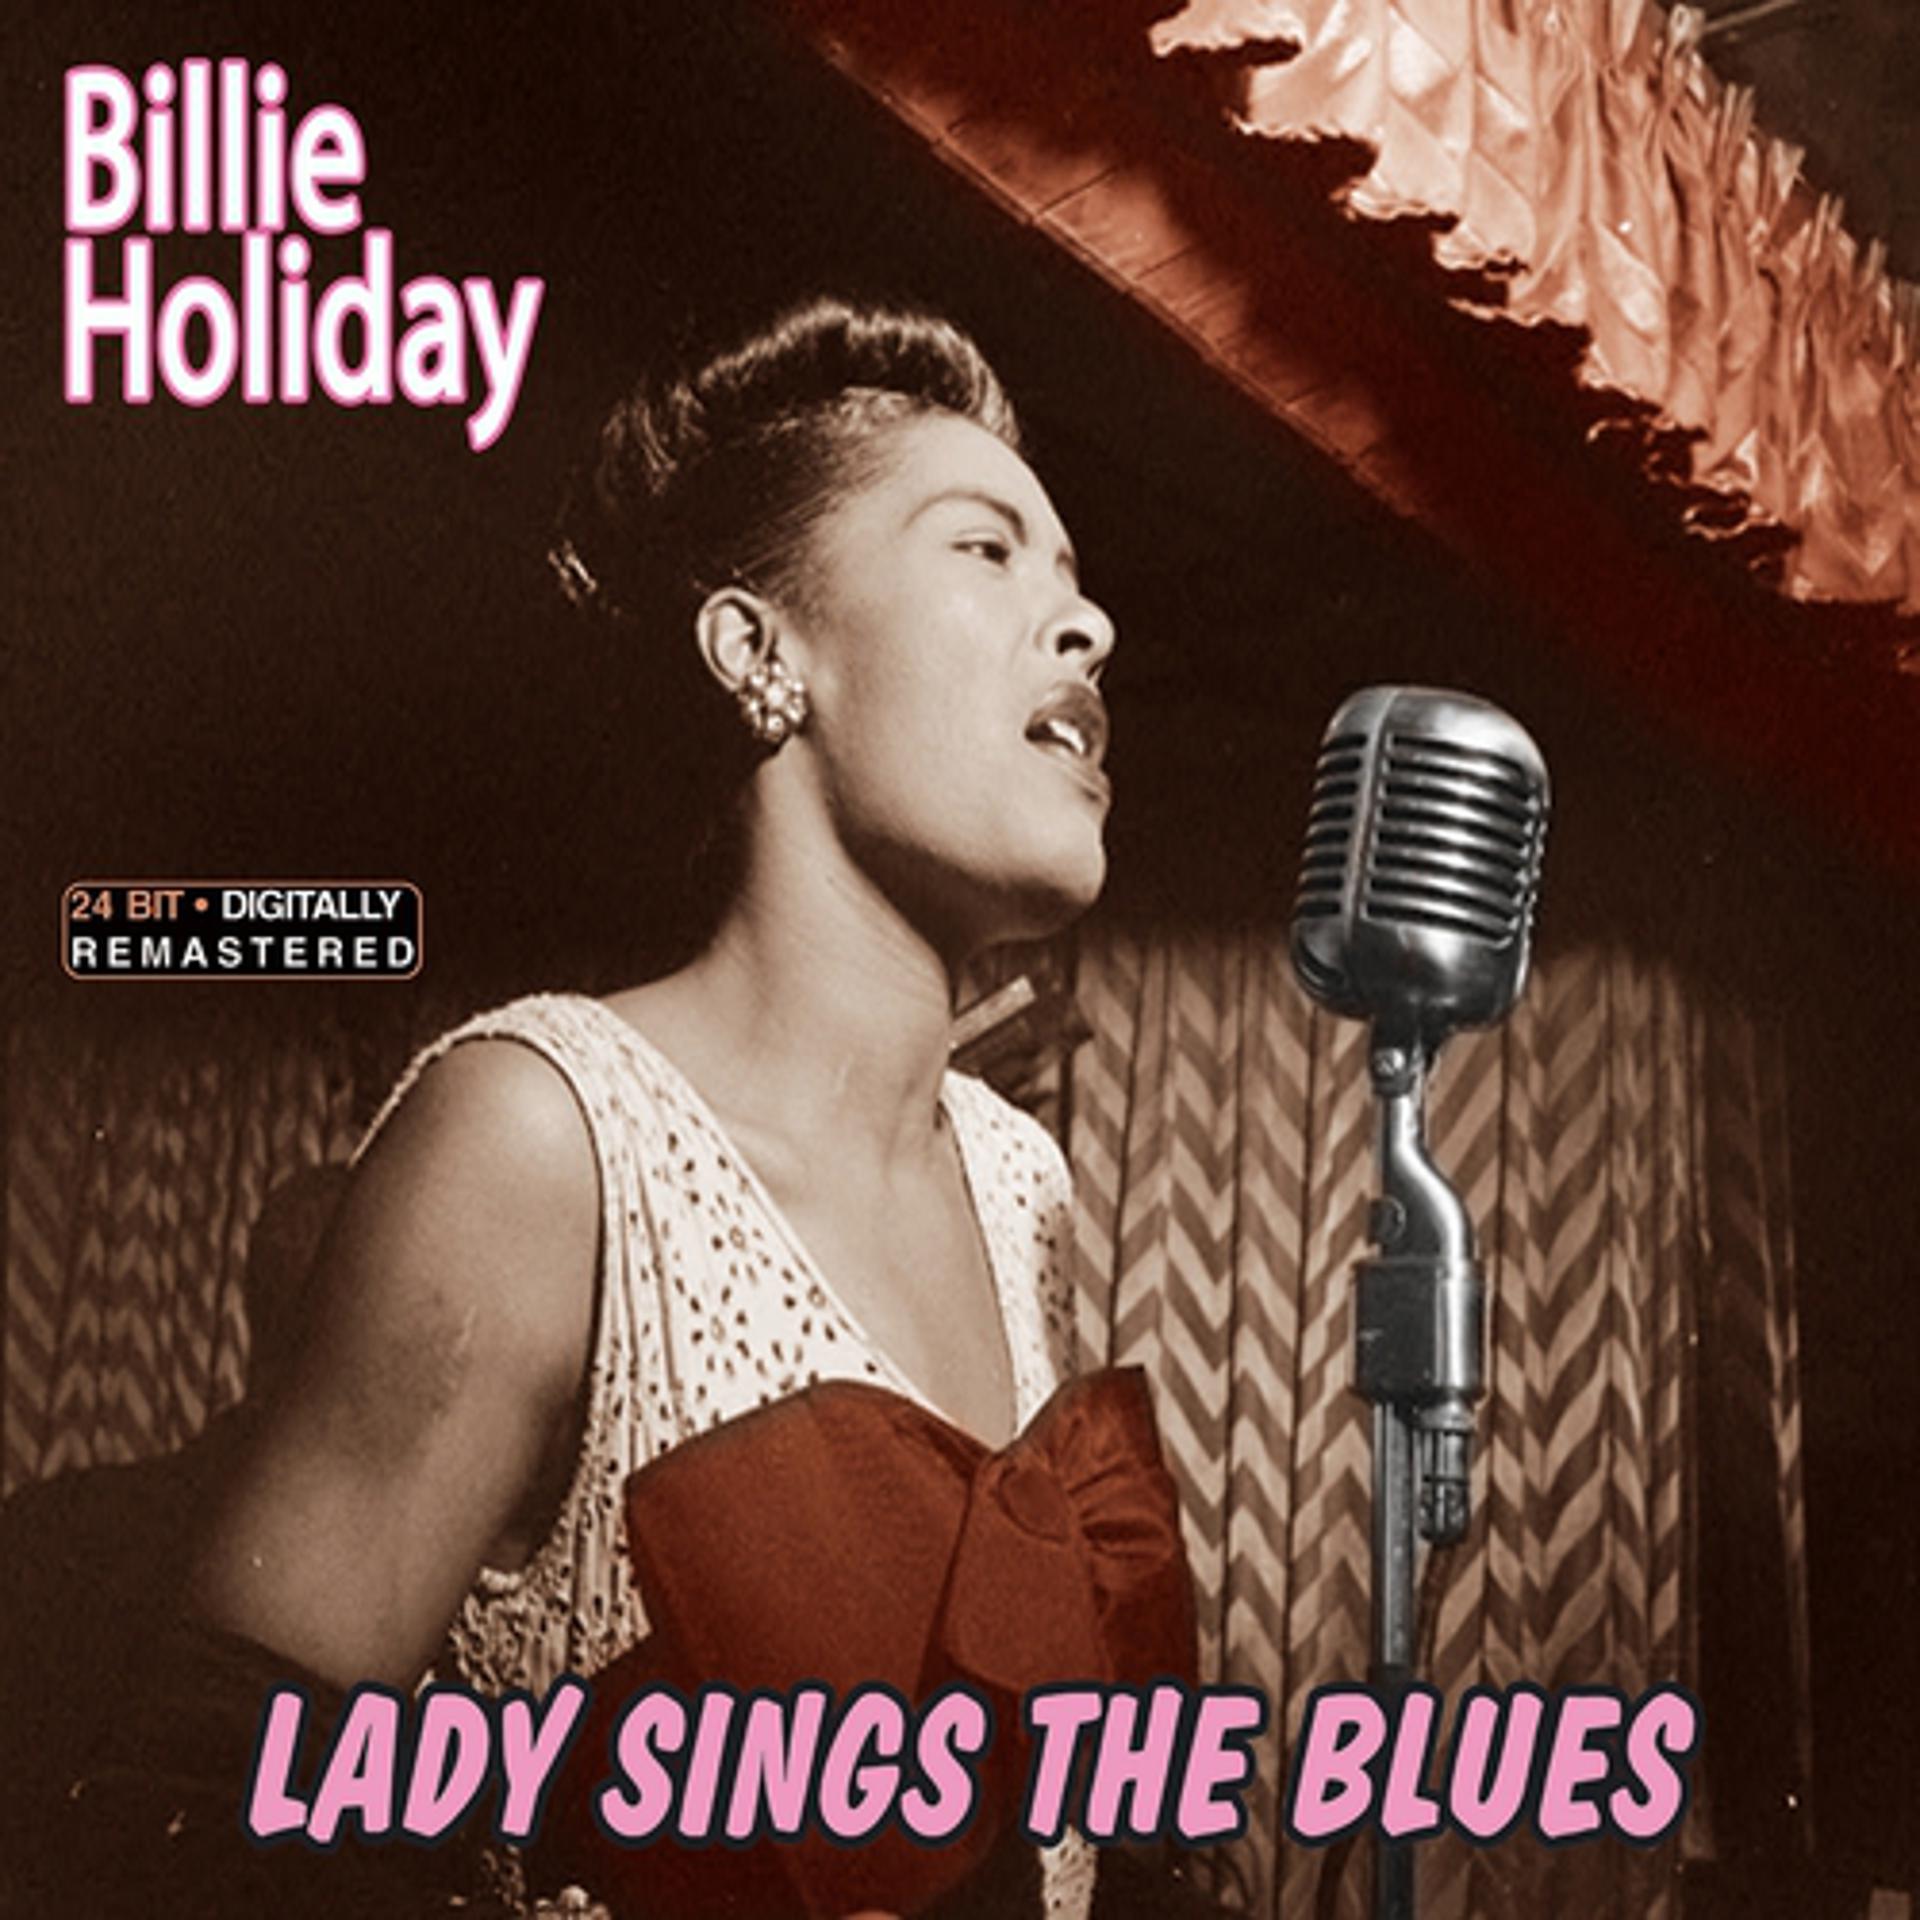 Sings the blues. Lady Sings. 2009-Lady Sings the Blues - -Billie Holiday. Холидей песня. Билли Холидей Википедия.